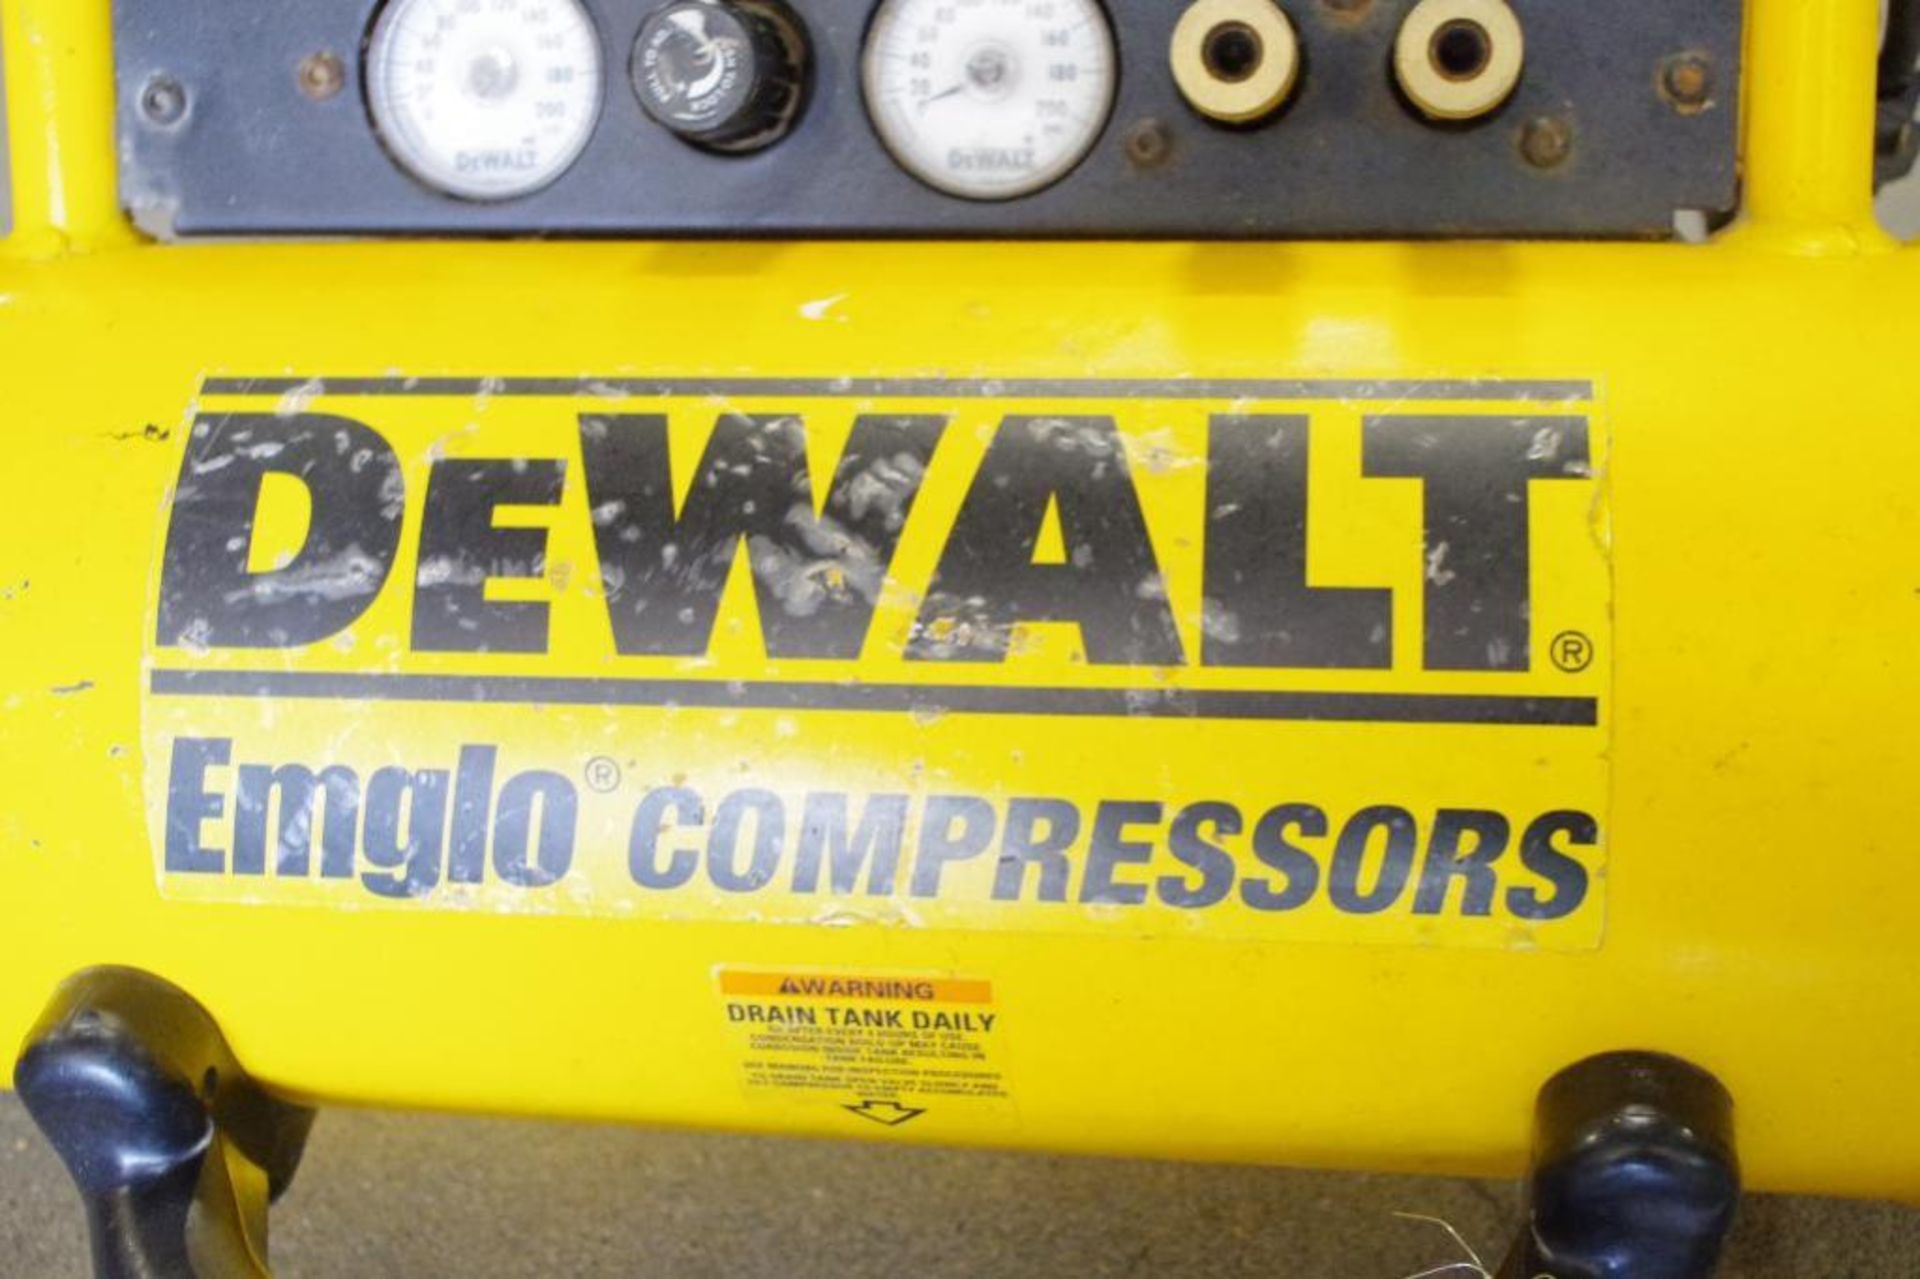 DEWALT 4-1/2-Gallon, 120V, Hand Carry Compressor, M/N D55155 - Image 2 of 4